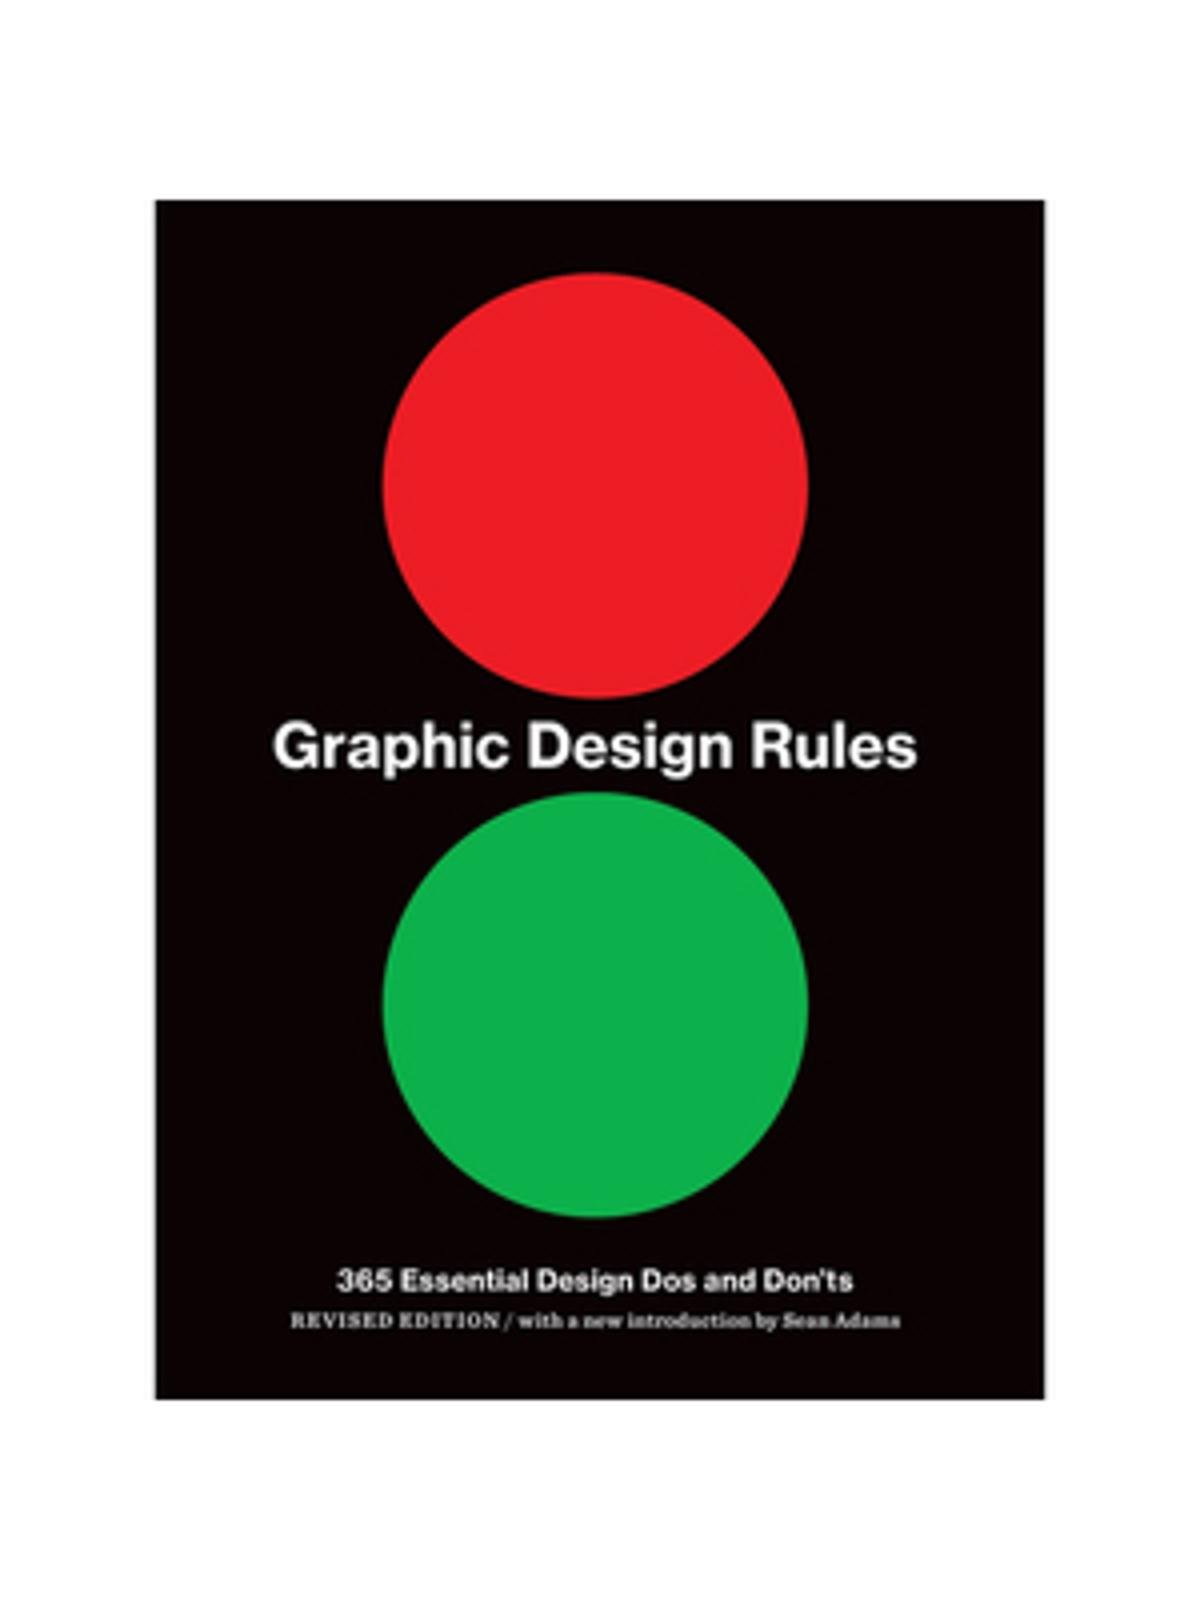 Princeton Architectural Press - Graphic Design Rules